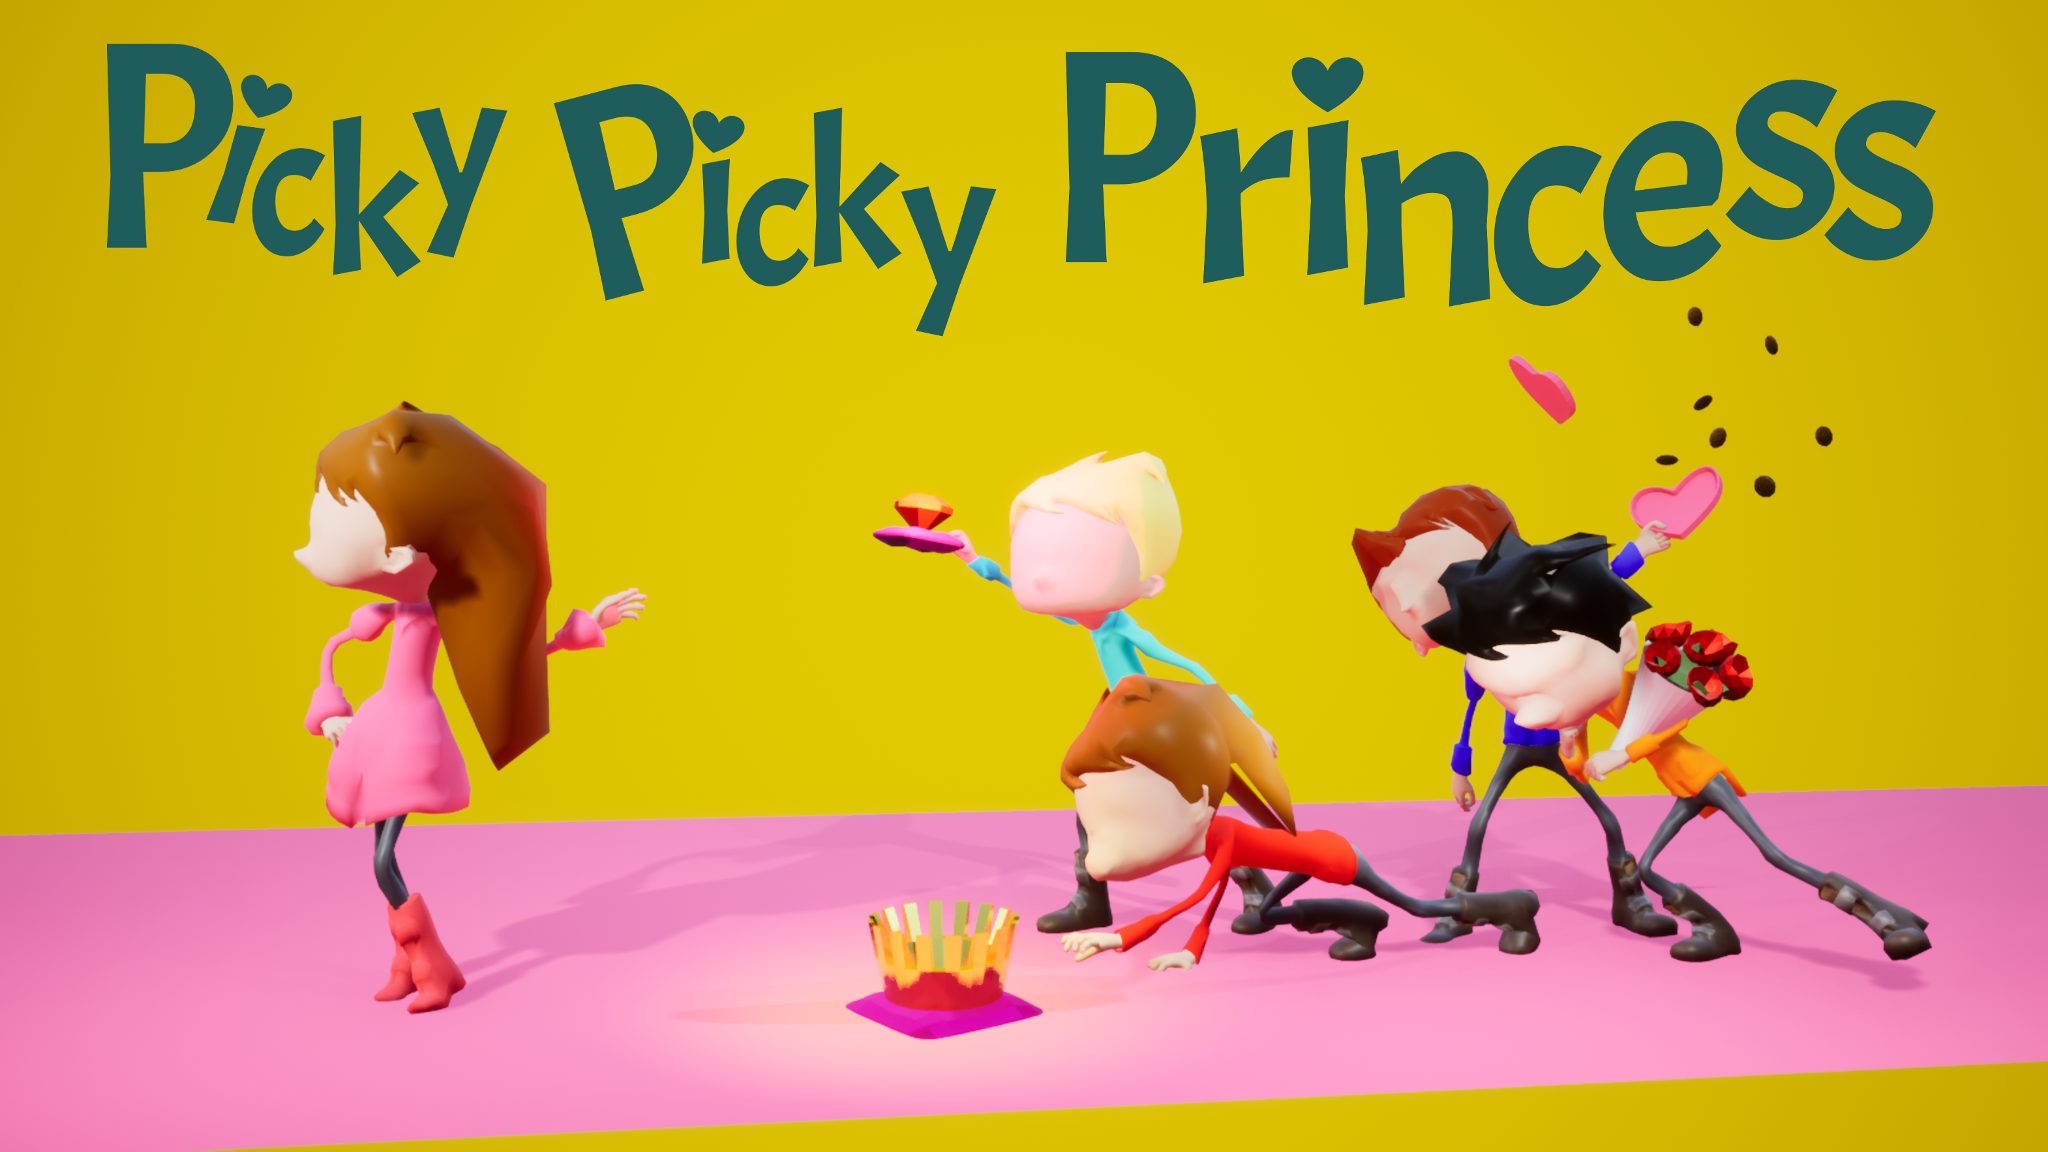 picky-picky-princess-by-twobit-studio